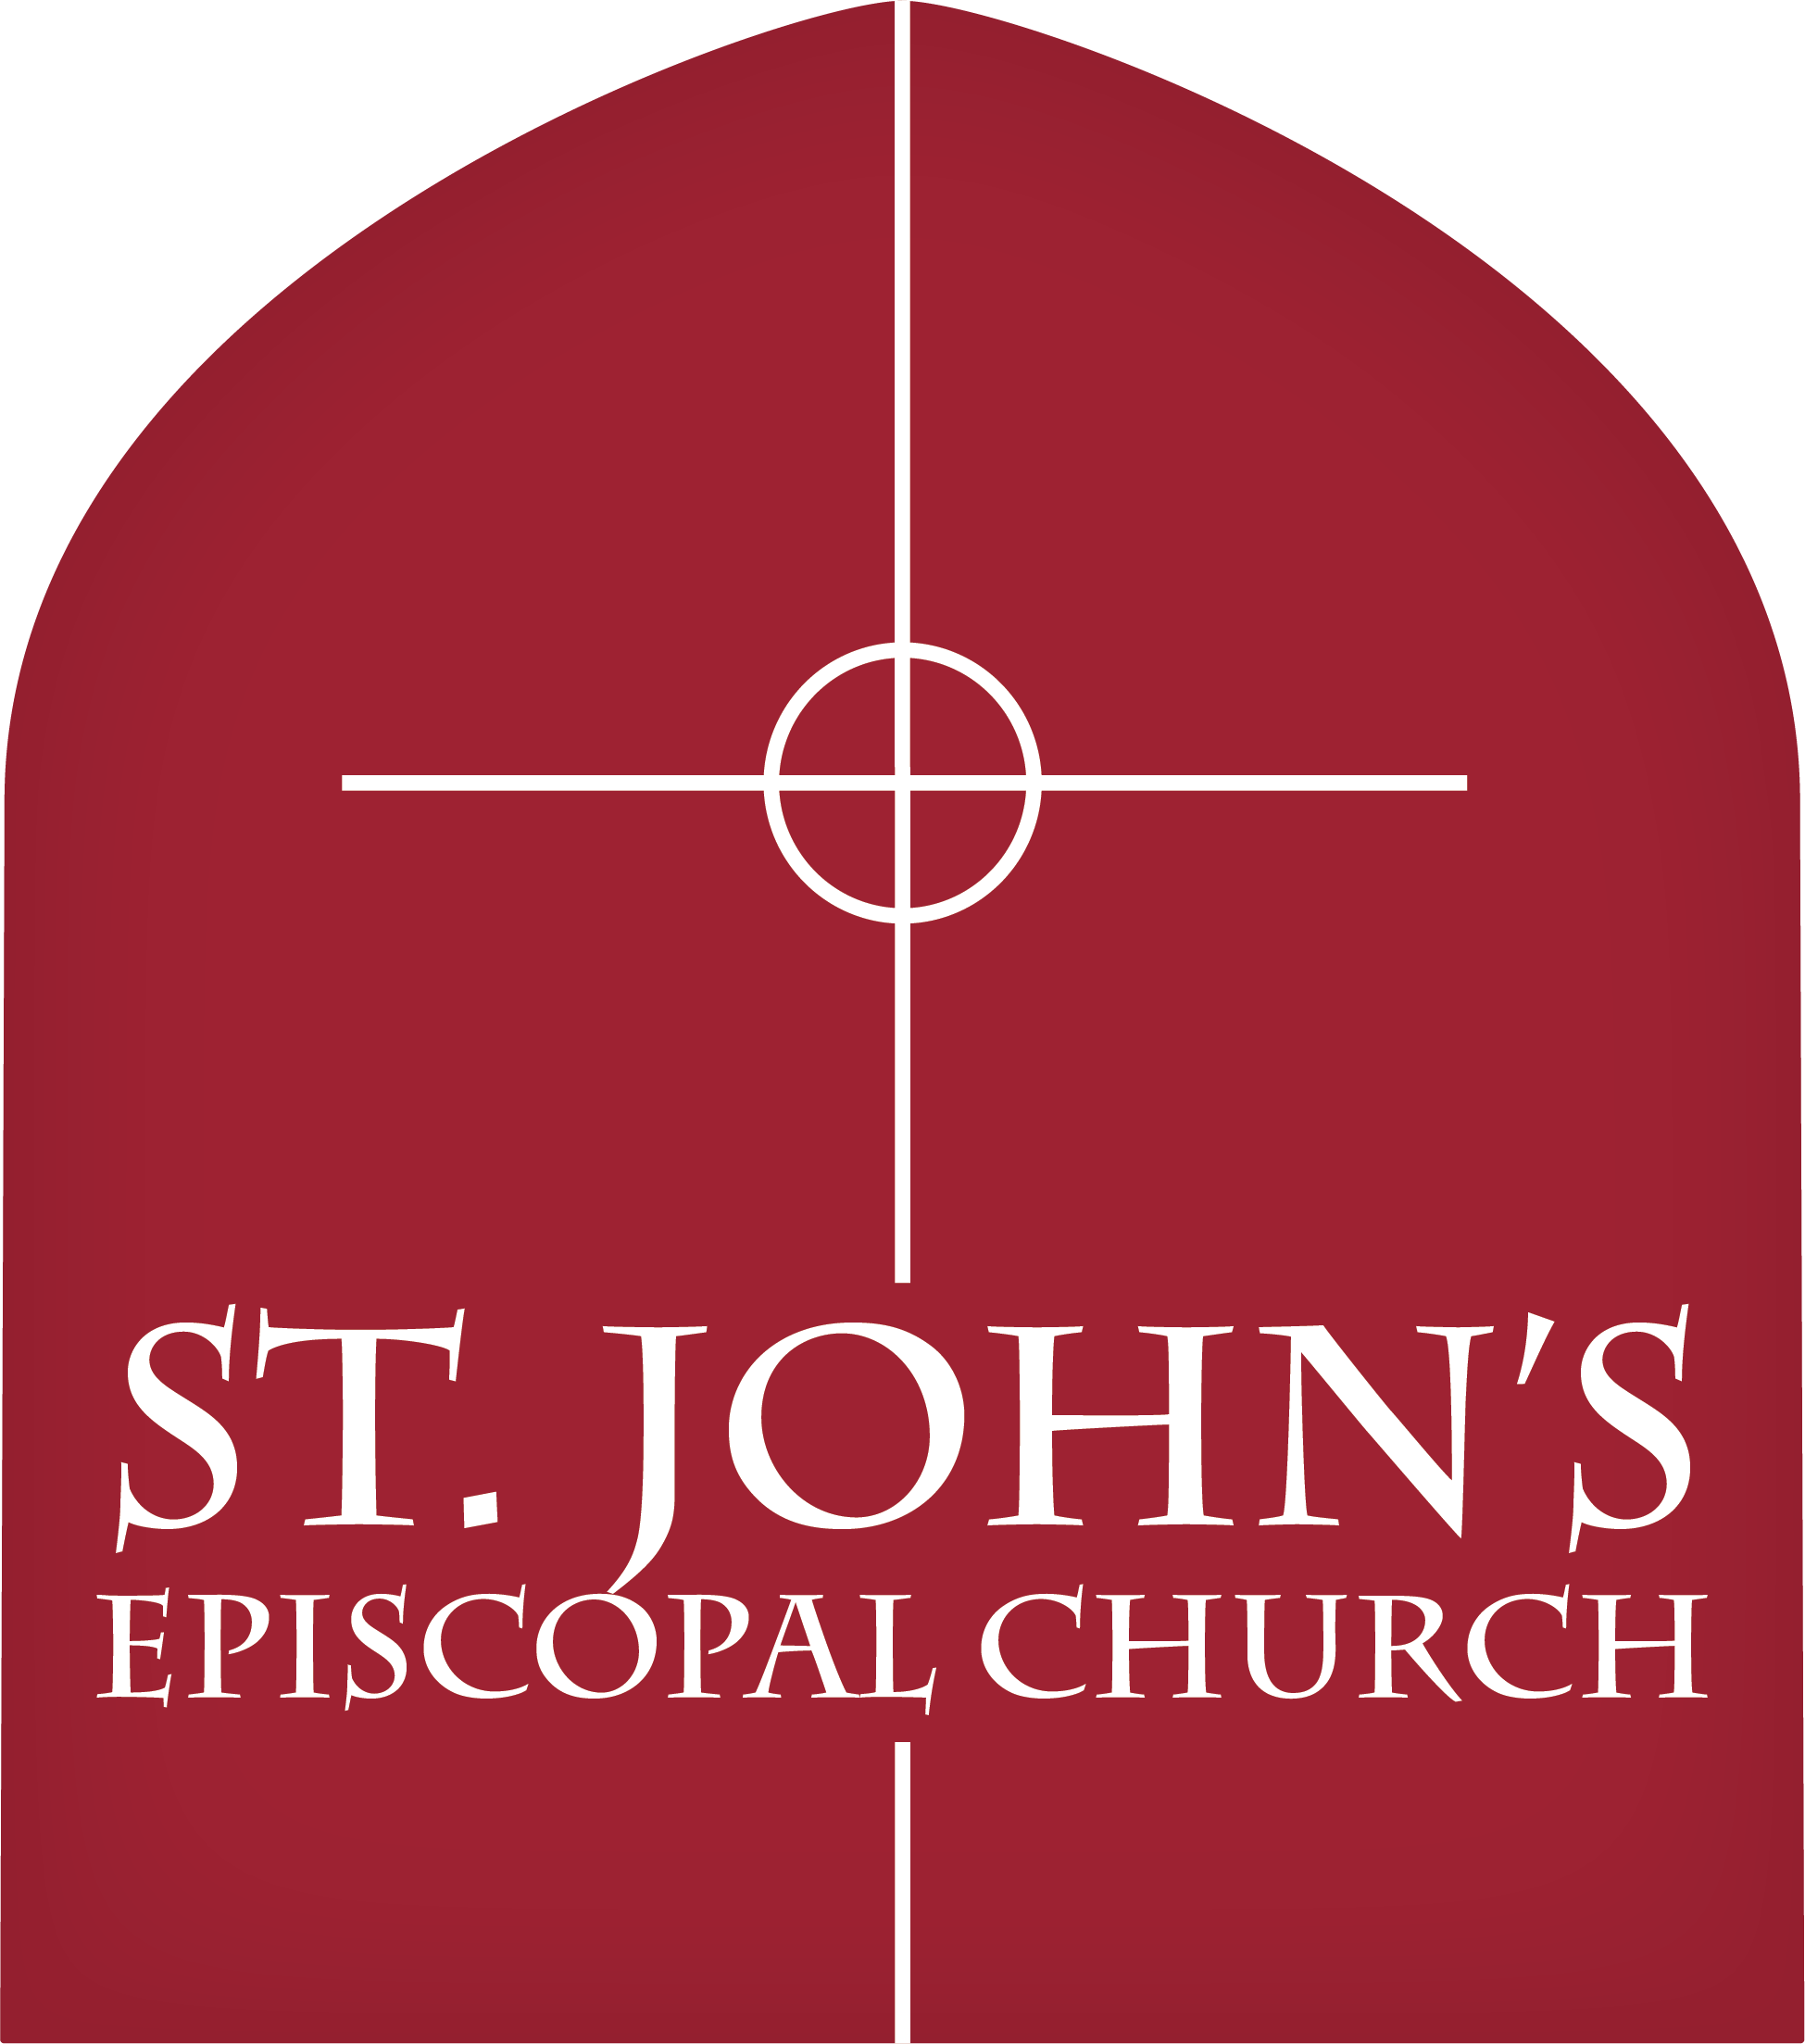 St. John&#39;s Episcopal Church